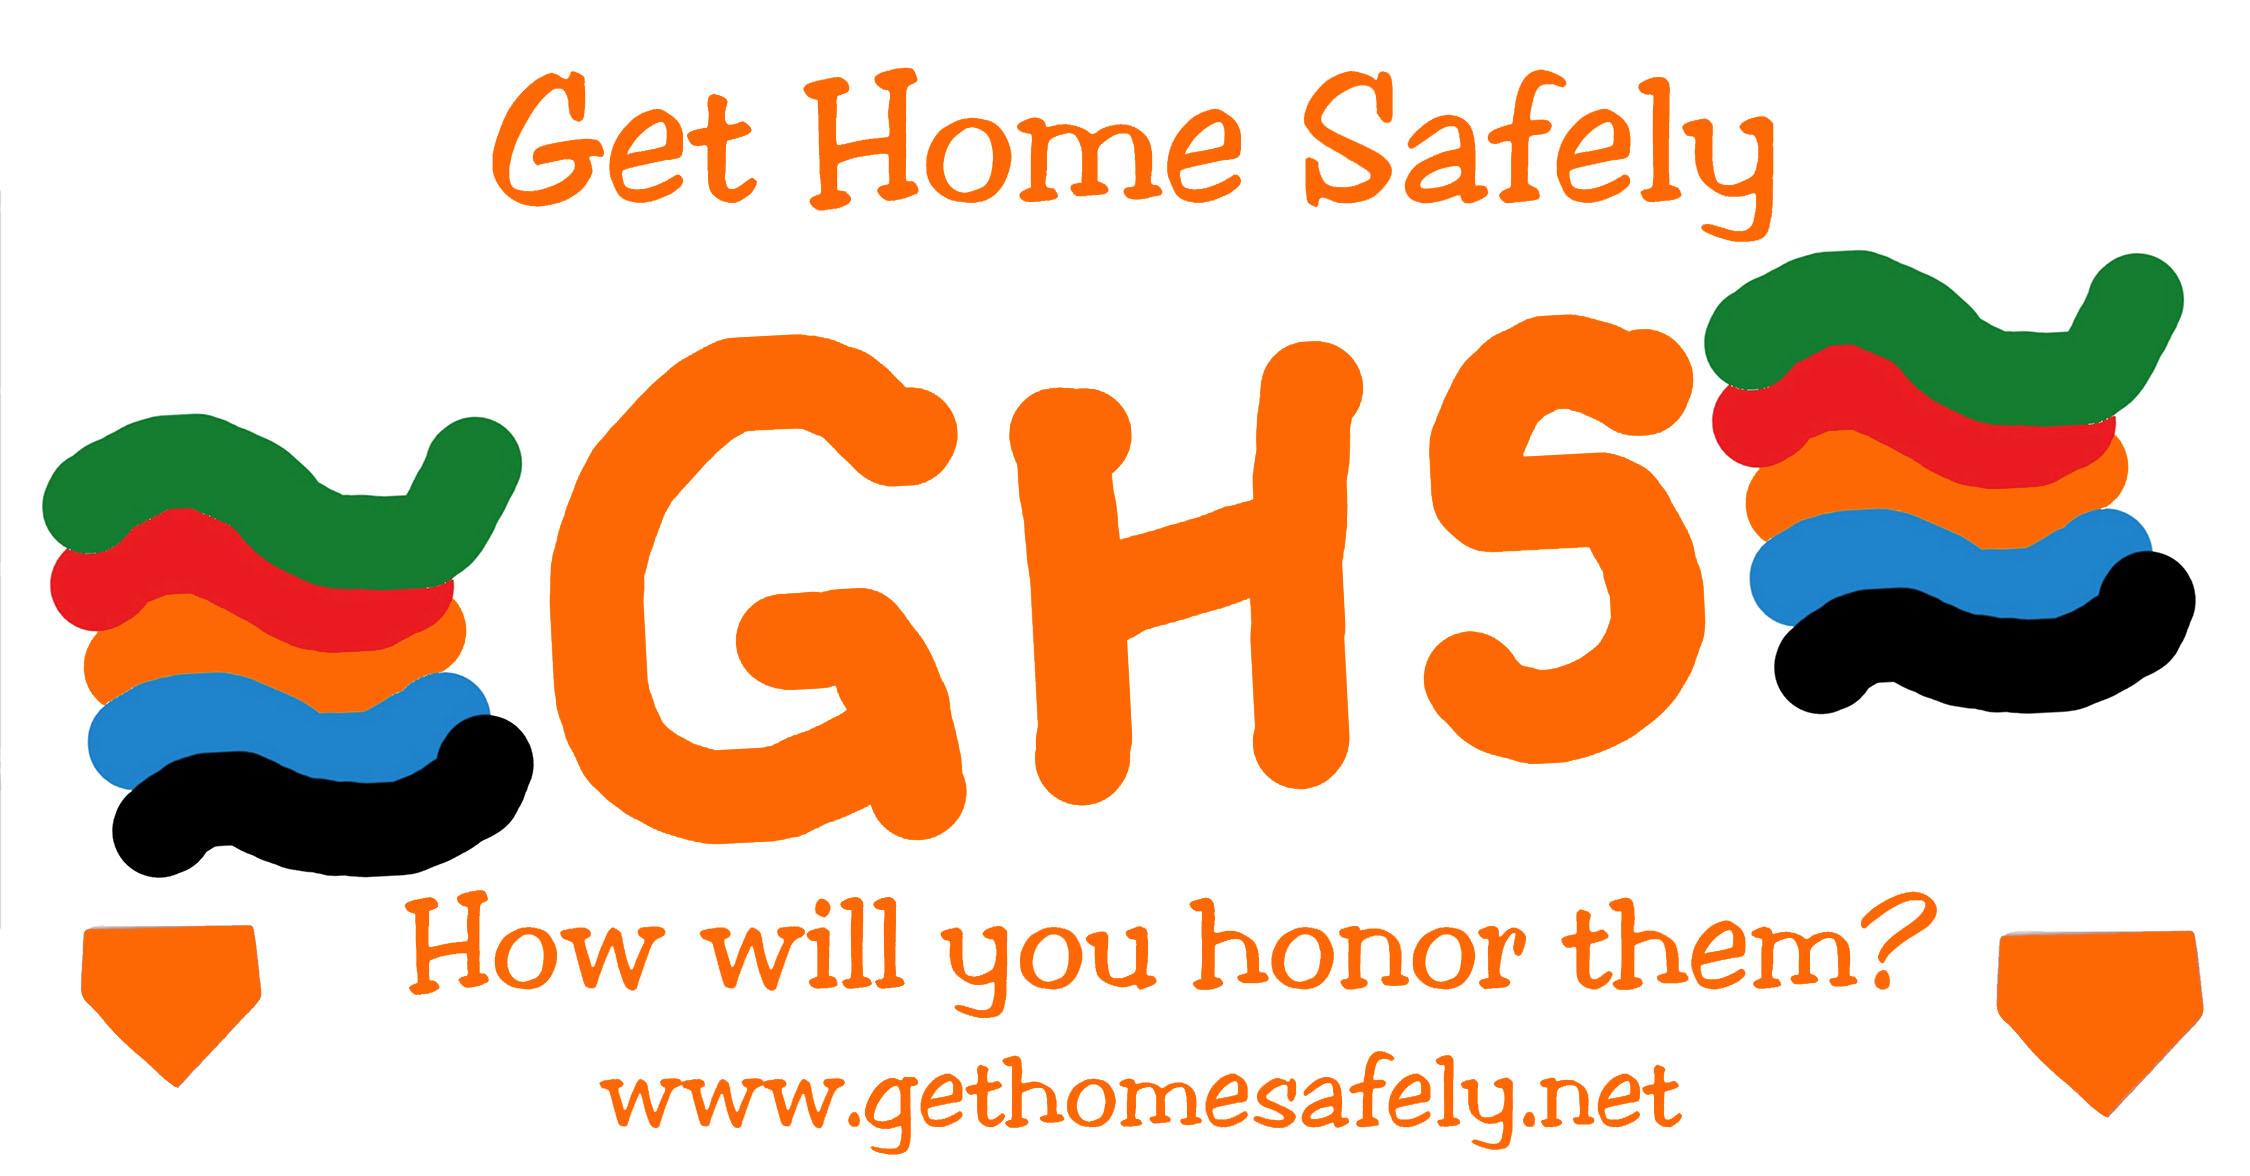 Get Home Safely Bumper Sticker Get Home Safely